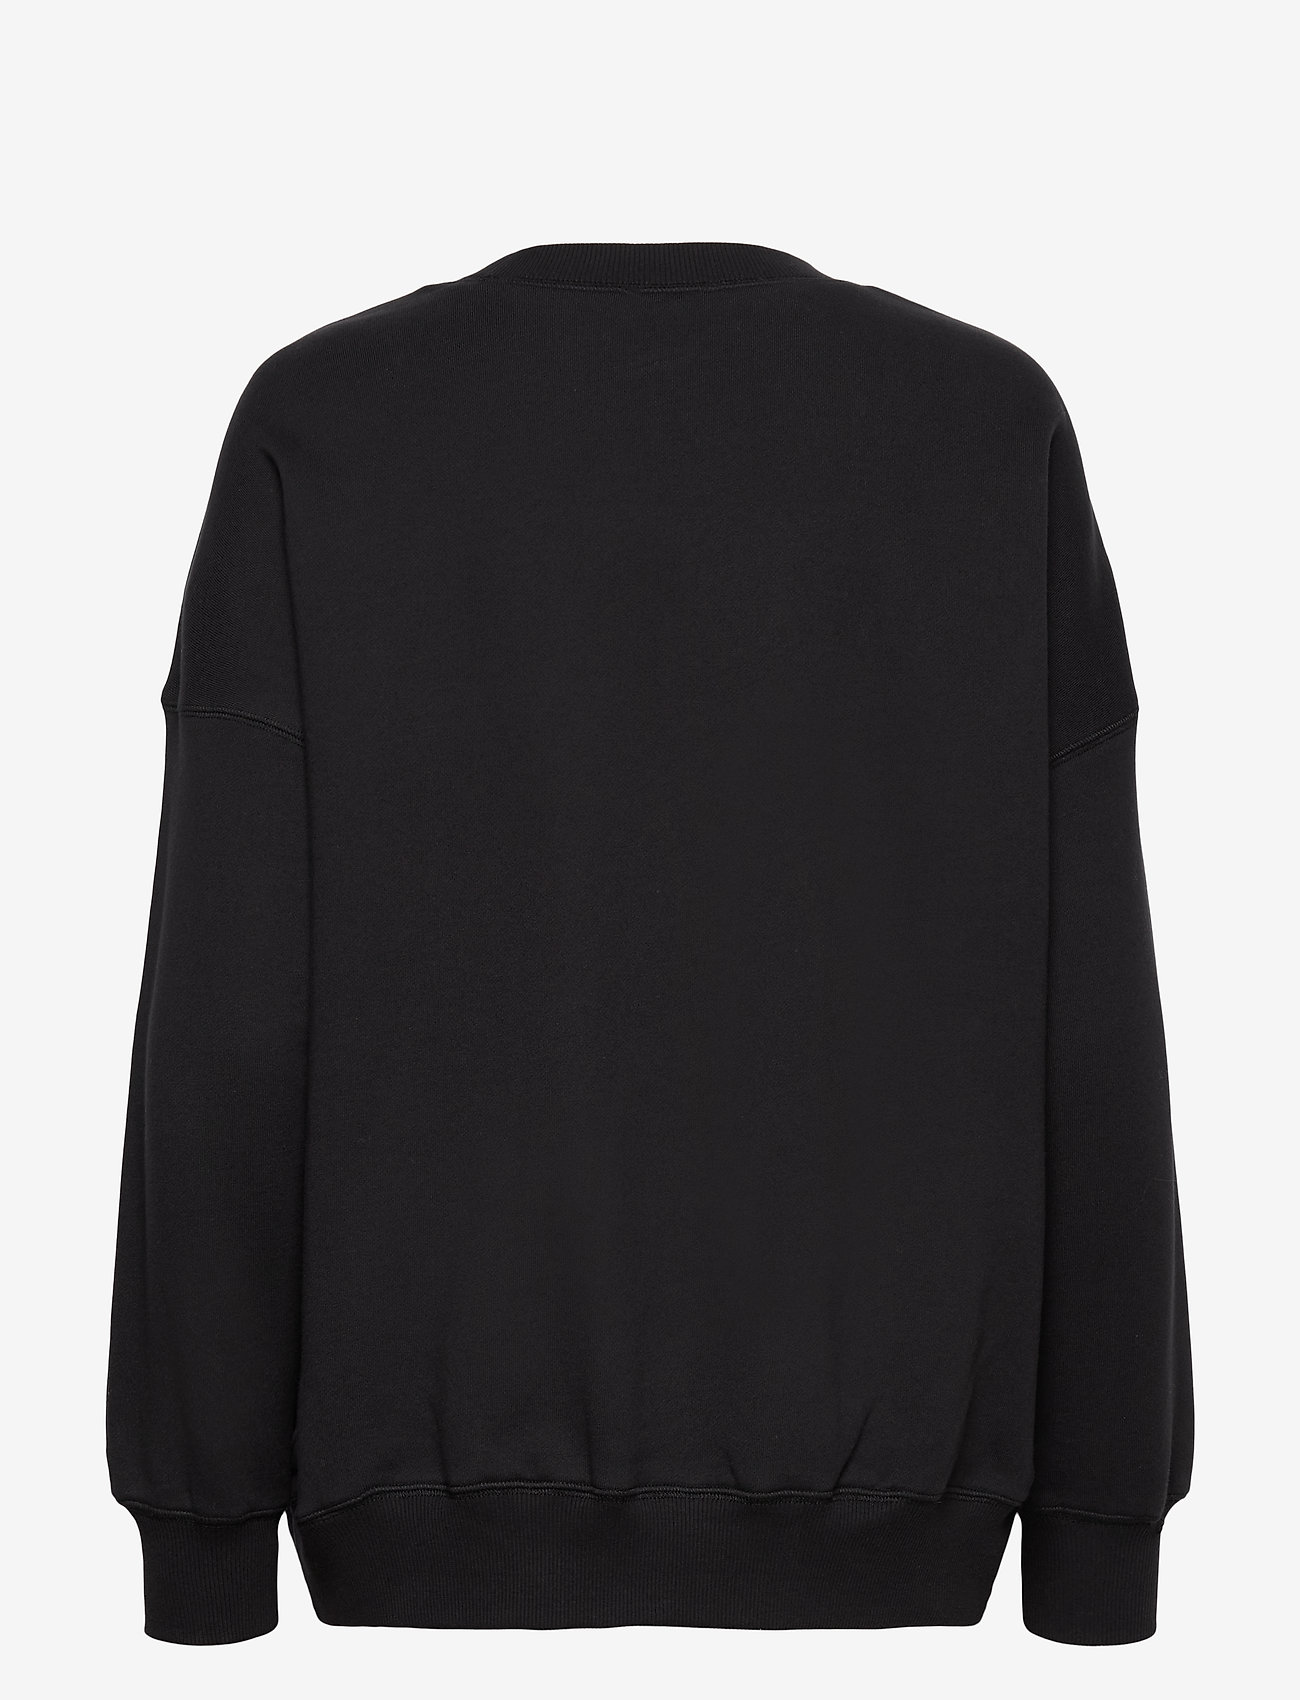 Coster Copenhagen - CC Heart oversize sweatshirt - sweatshirts - black - 1